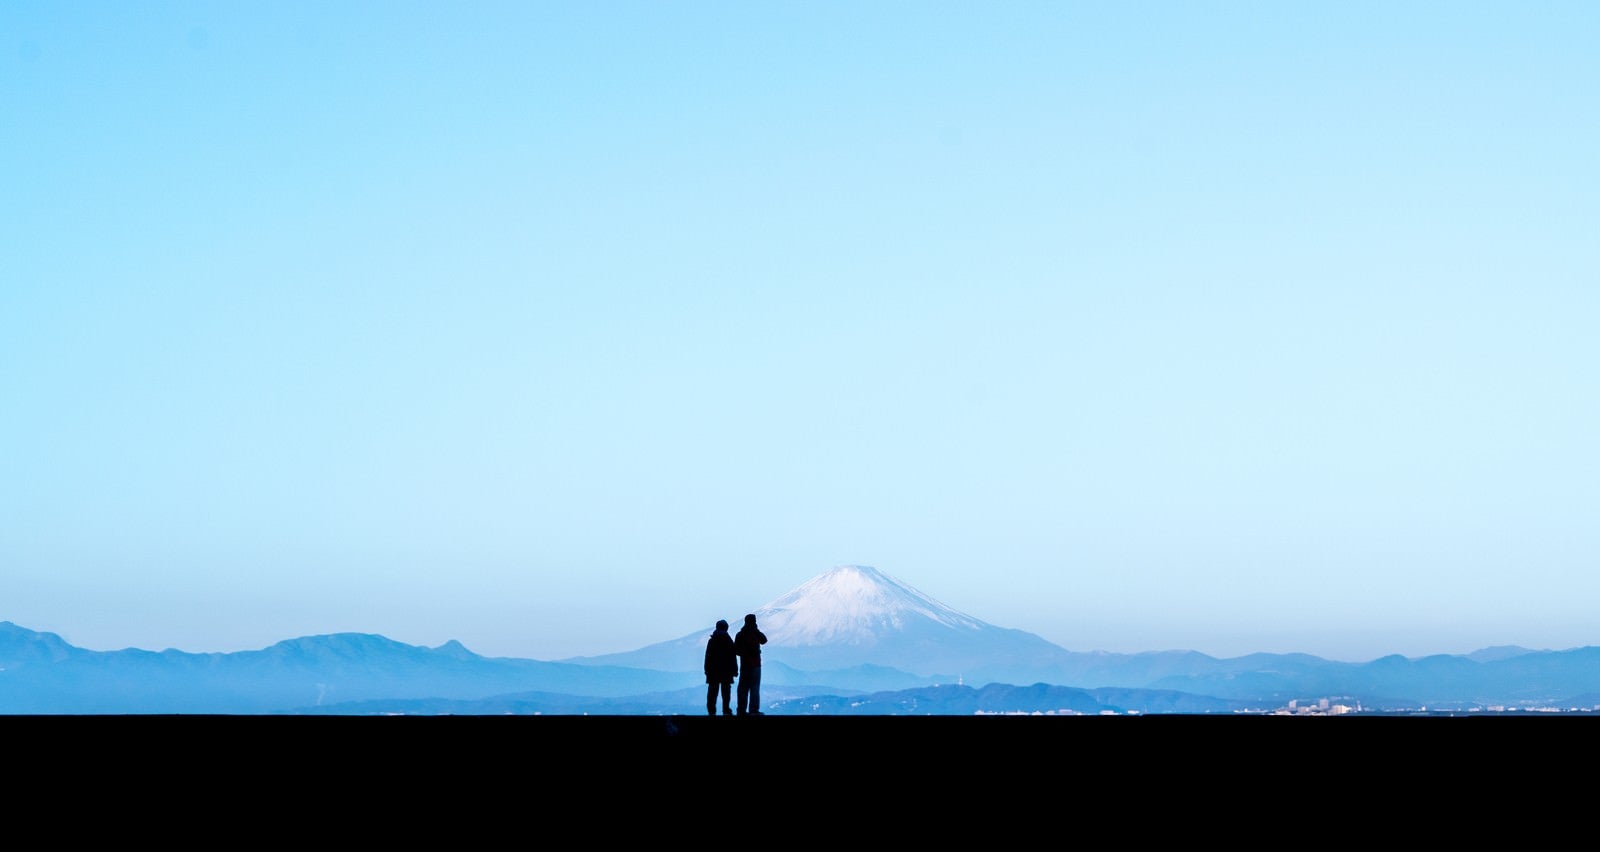 「カップルで快晴の富士山を見ているシルエット」の写真